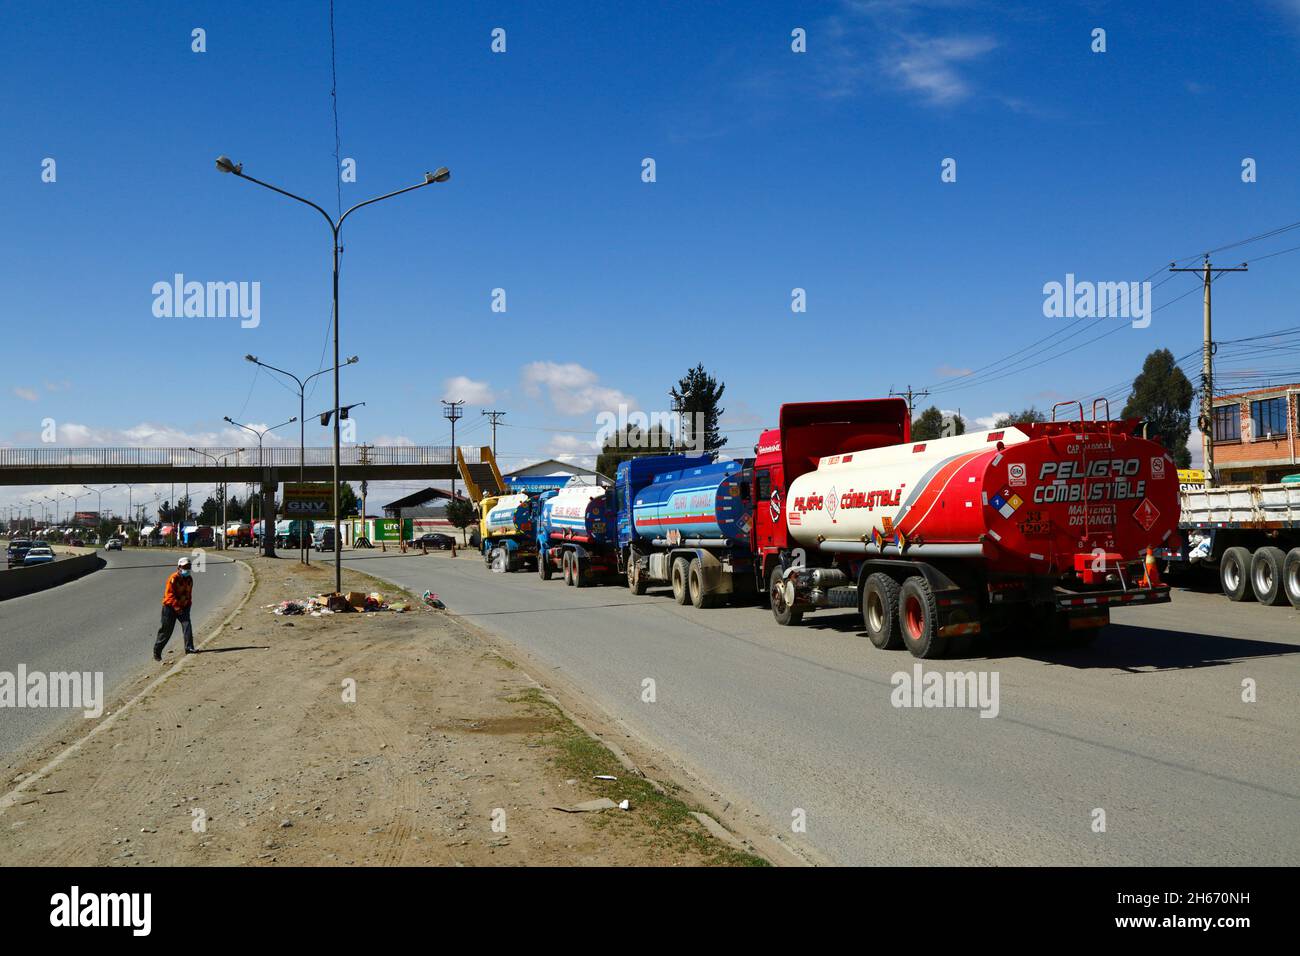 Senkata, El Alto, Bolivie. 13th novembre 2021. Des camions-citernes sont en file d'attente à l'extérieur de l'usine de carburant de Senkata sur AV 6 de Marzo / Camino Oruro à El Alto. Yacimientos Petrolíferos Fiscales Bolivianos (YPFB, la compagnie d'État bolivienne de pétrole / hydrocarbures) ont une grande raffinerie et une grande usine de stockage ici: C'est aussi le centre de distribution pour fournir la Paz, El Alto et la région environnante. Banque D'Images